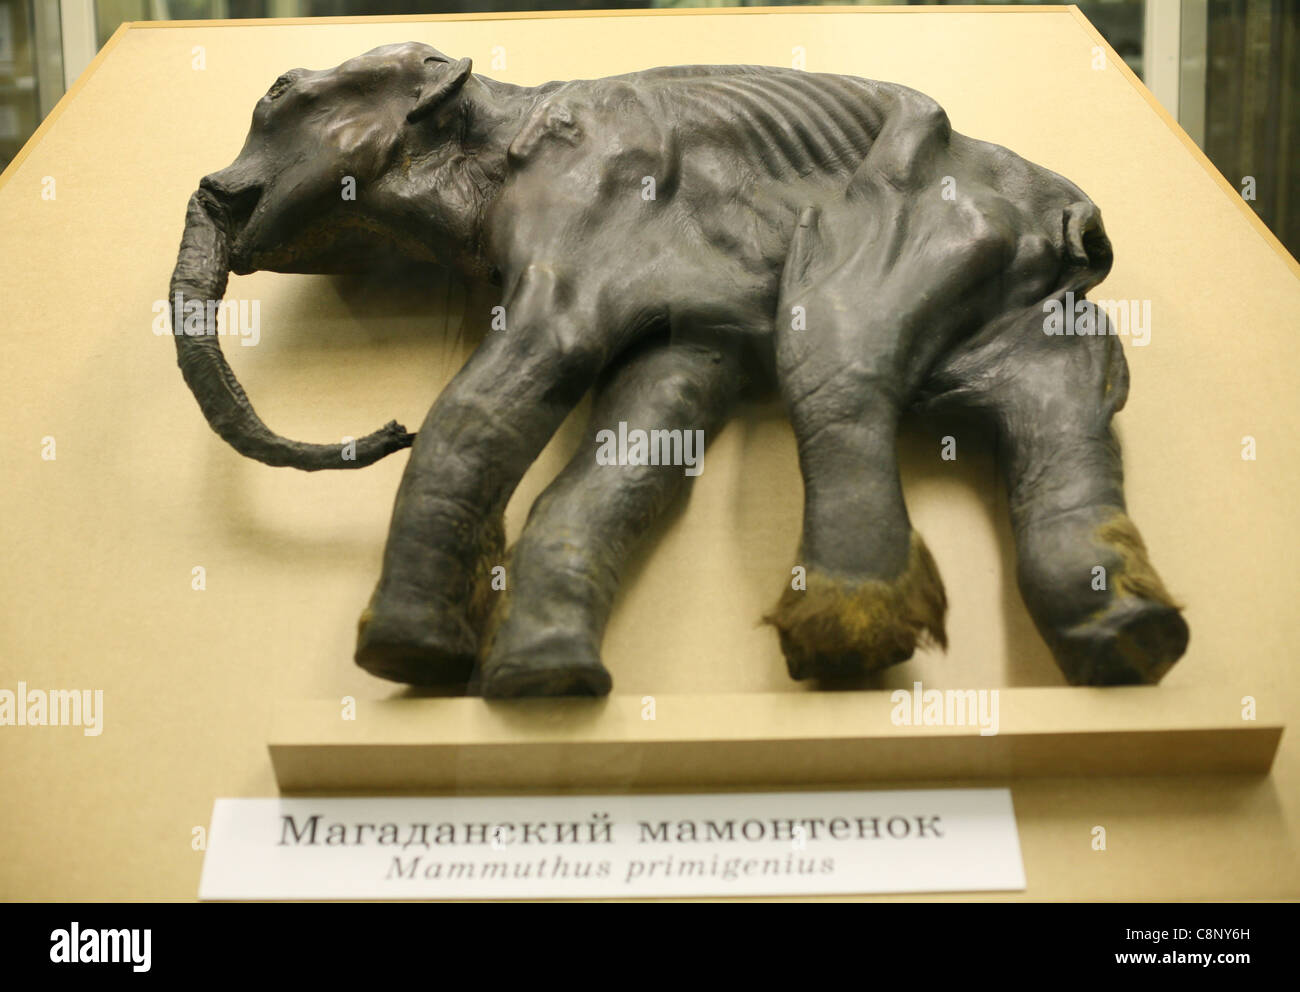 La mummia della famosa baby mammoth Dima nel Museo Zoologico di San Pietroburgo, Russia. Foto Stock